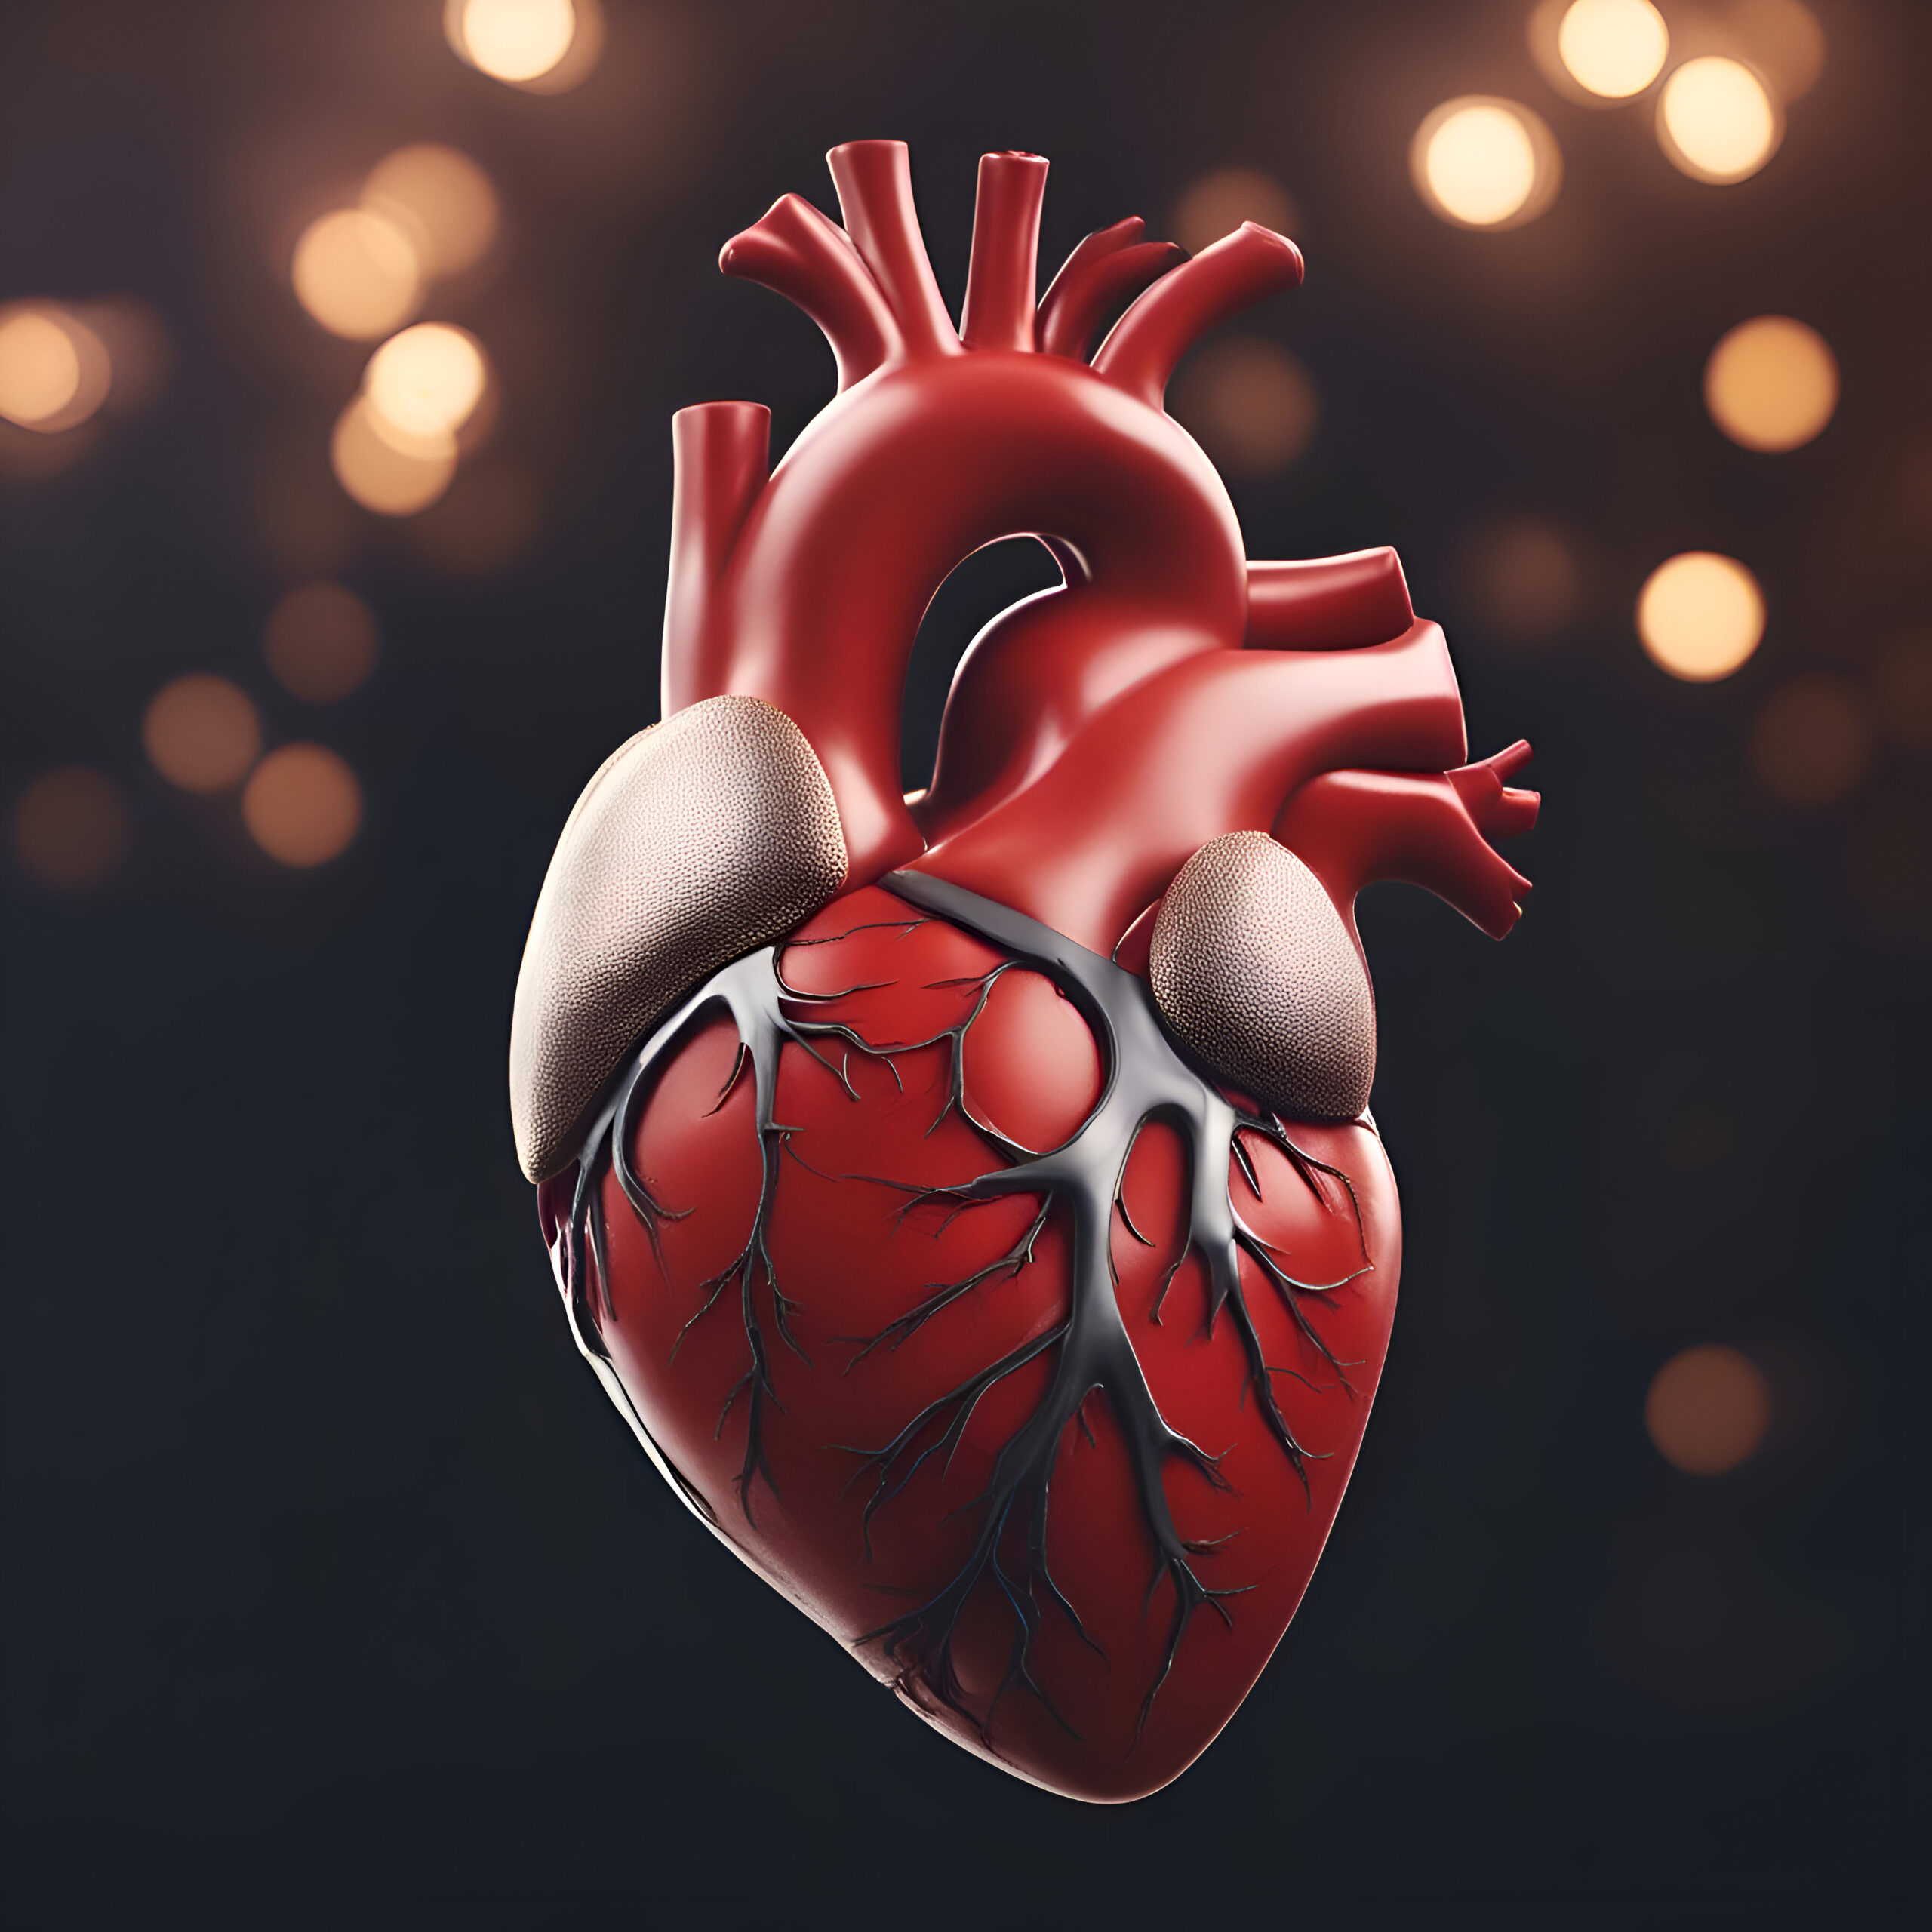 What is ischemic heart disease?